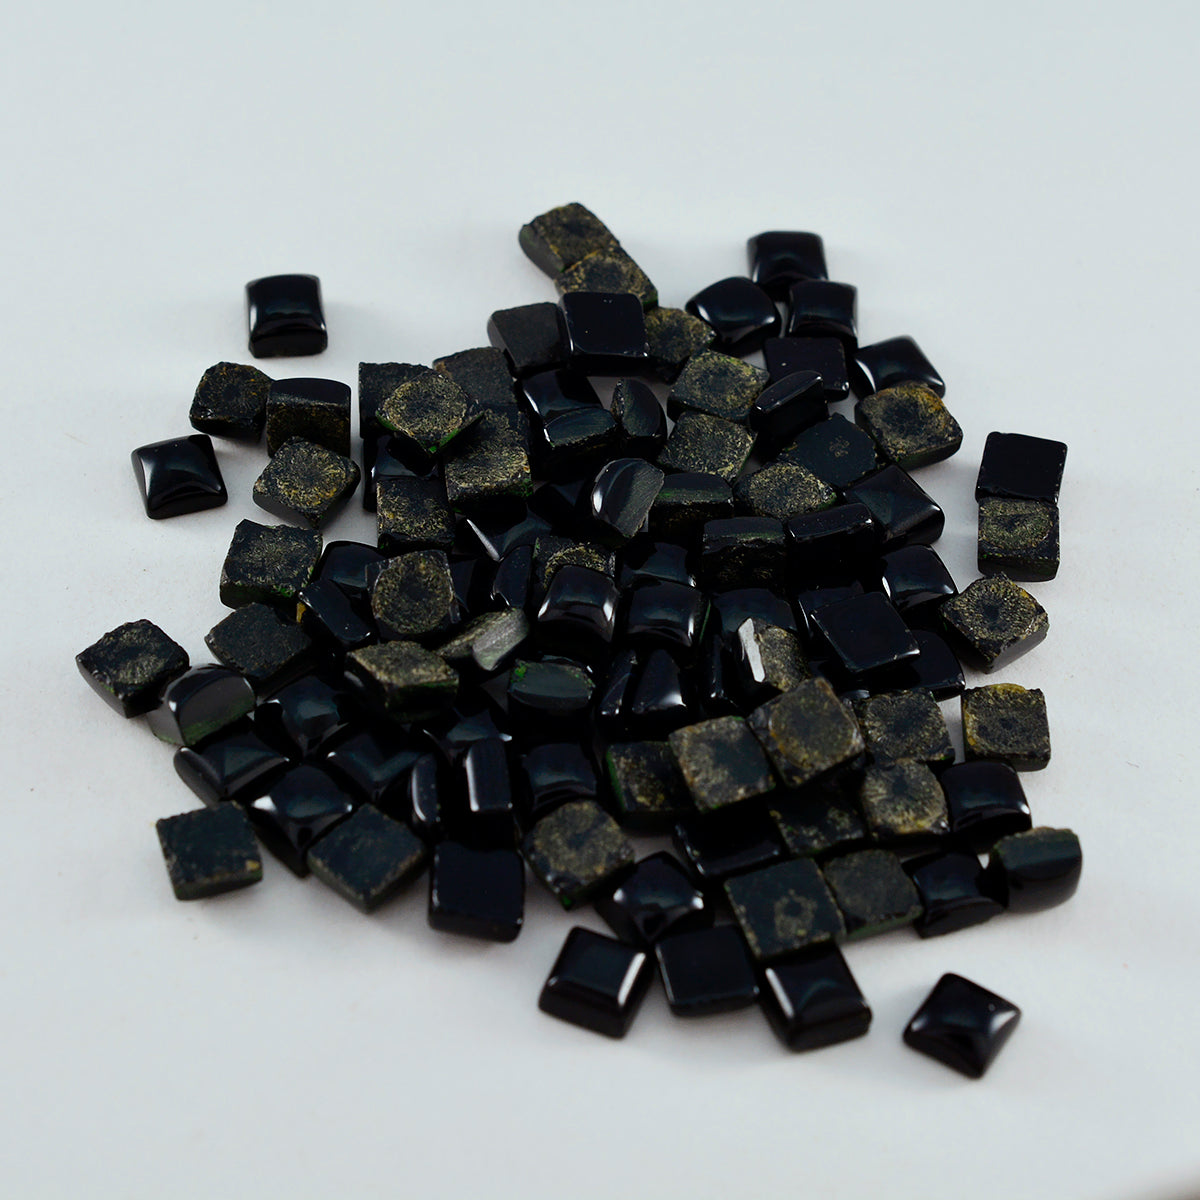 Riyogems 1PC Black Onyx Cabochon 5X5 mm Square Shape astonishing Quality Stone